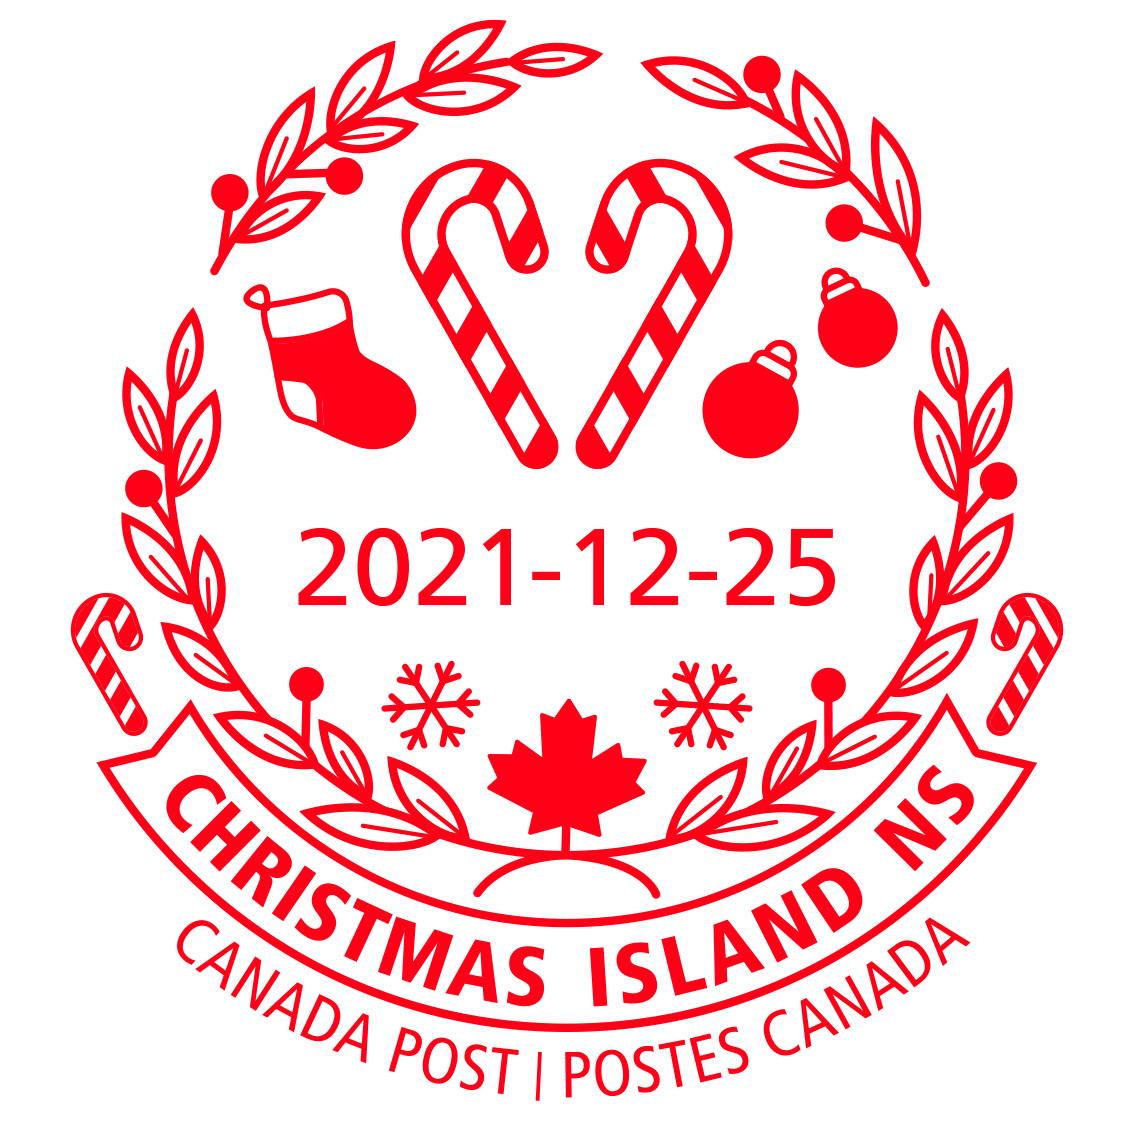 Deux cannes de bonbon, un bas de Noël, des ornements, des flocons de neige, une feuille d’érable et une couronne, avec la date 25 décembre 2020.